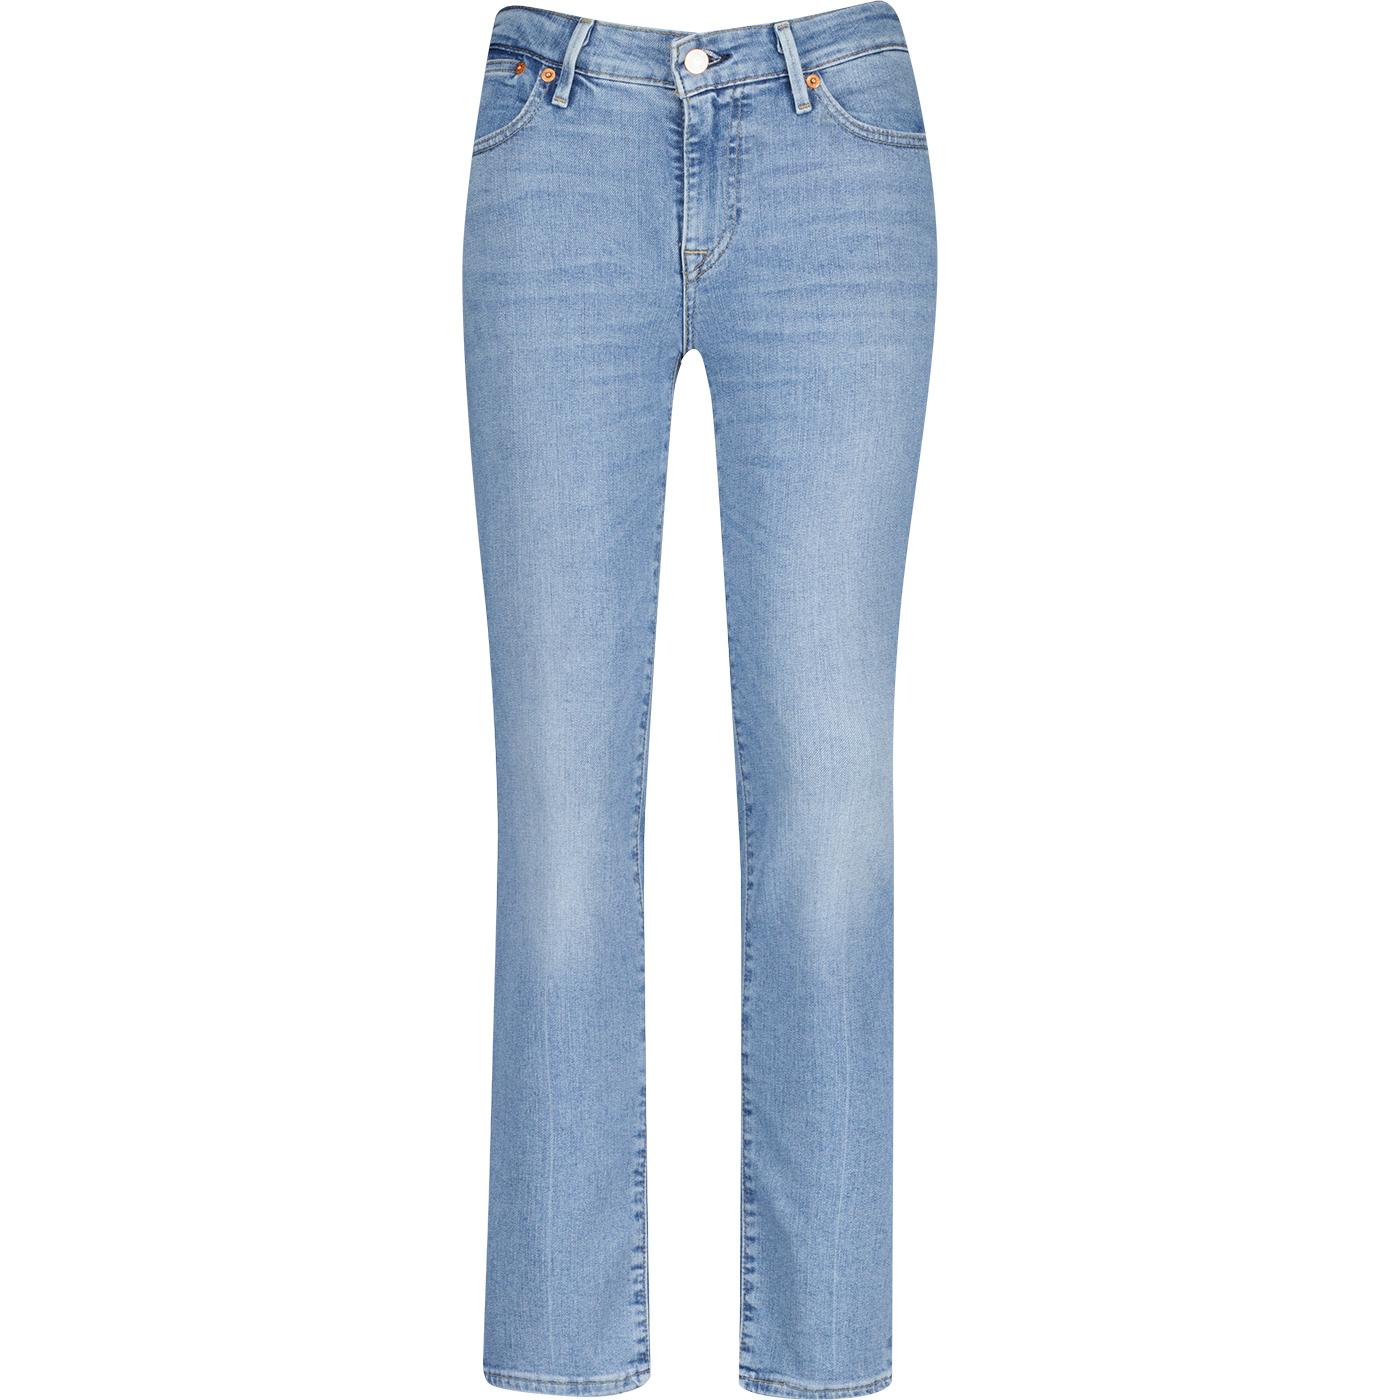 Levi's® 712™ Welt Pocket Slim Fit Denim Jeans STL